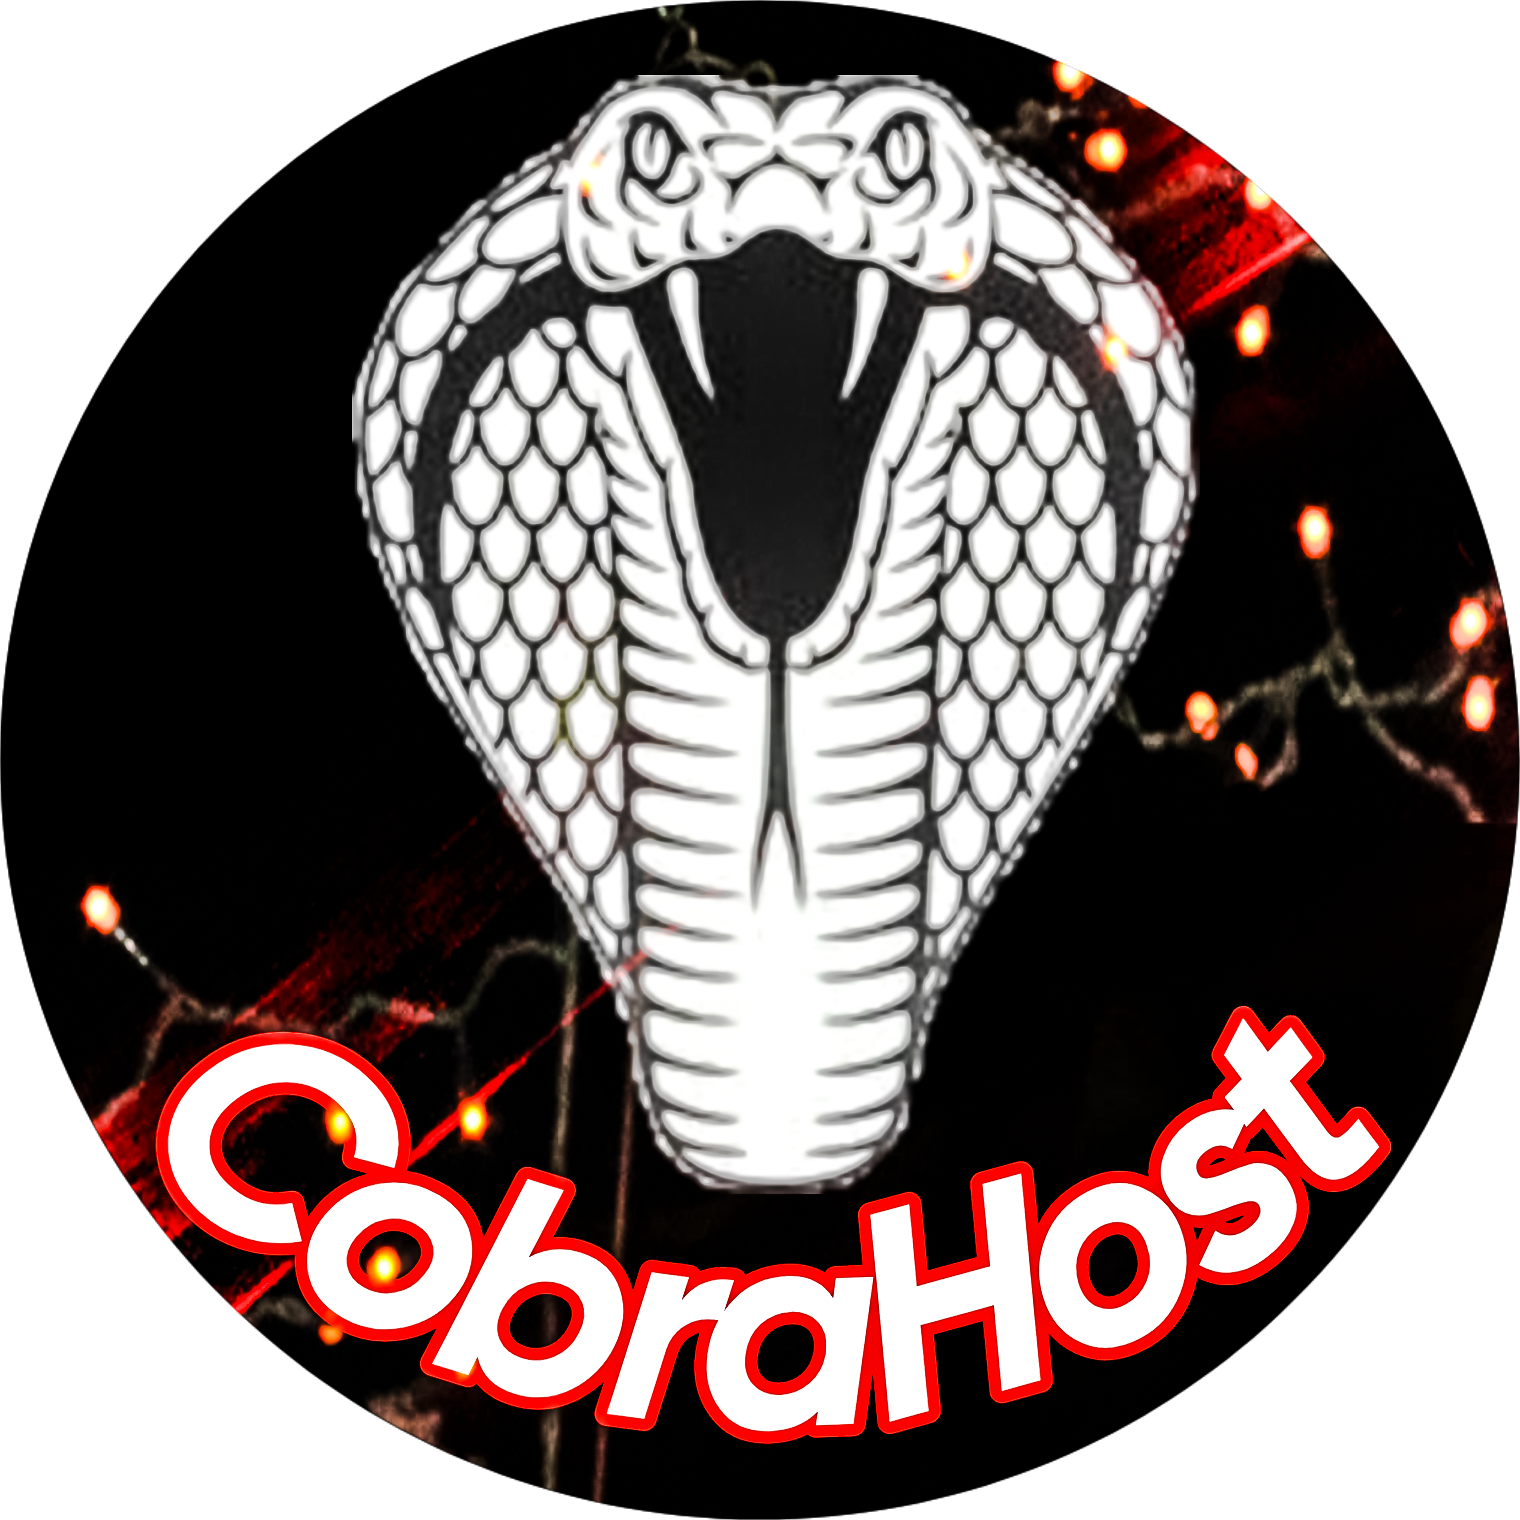 Cobra-host